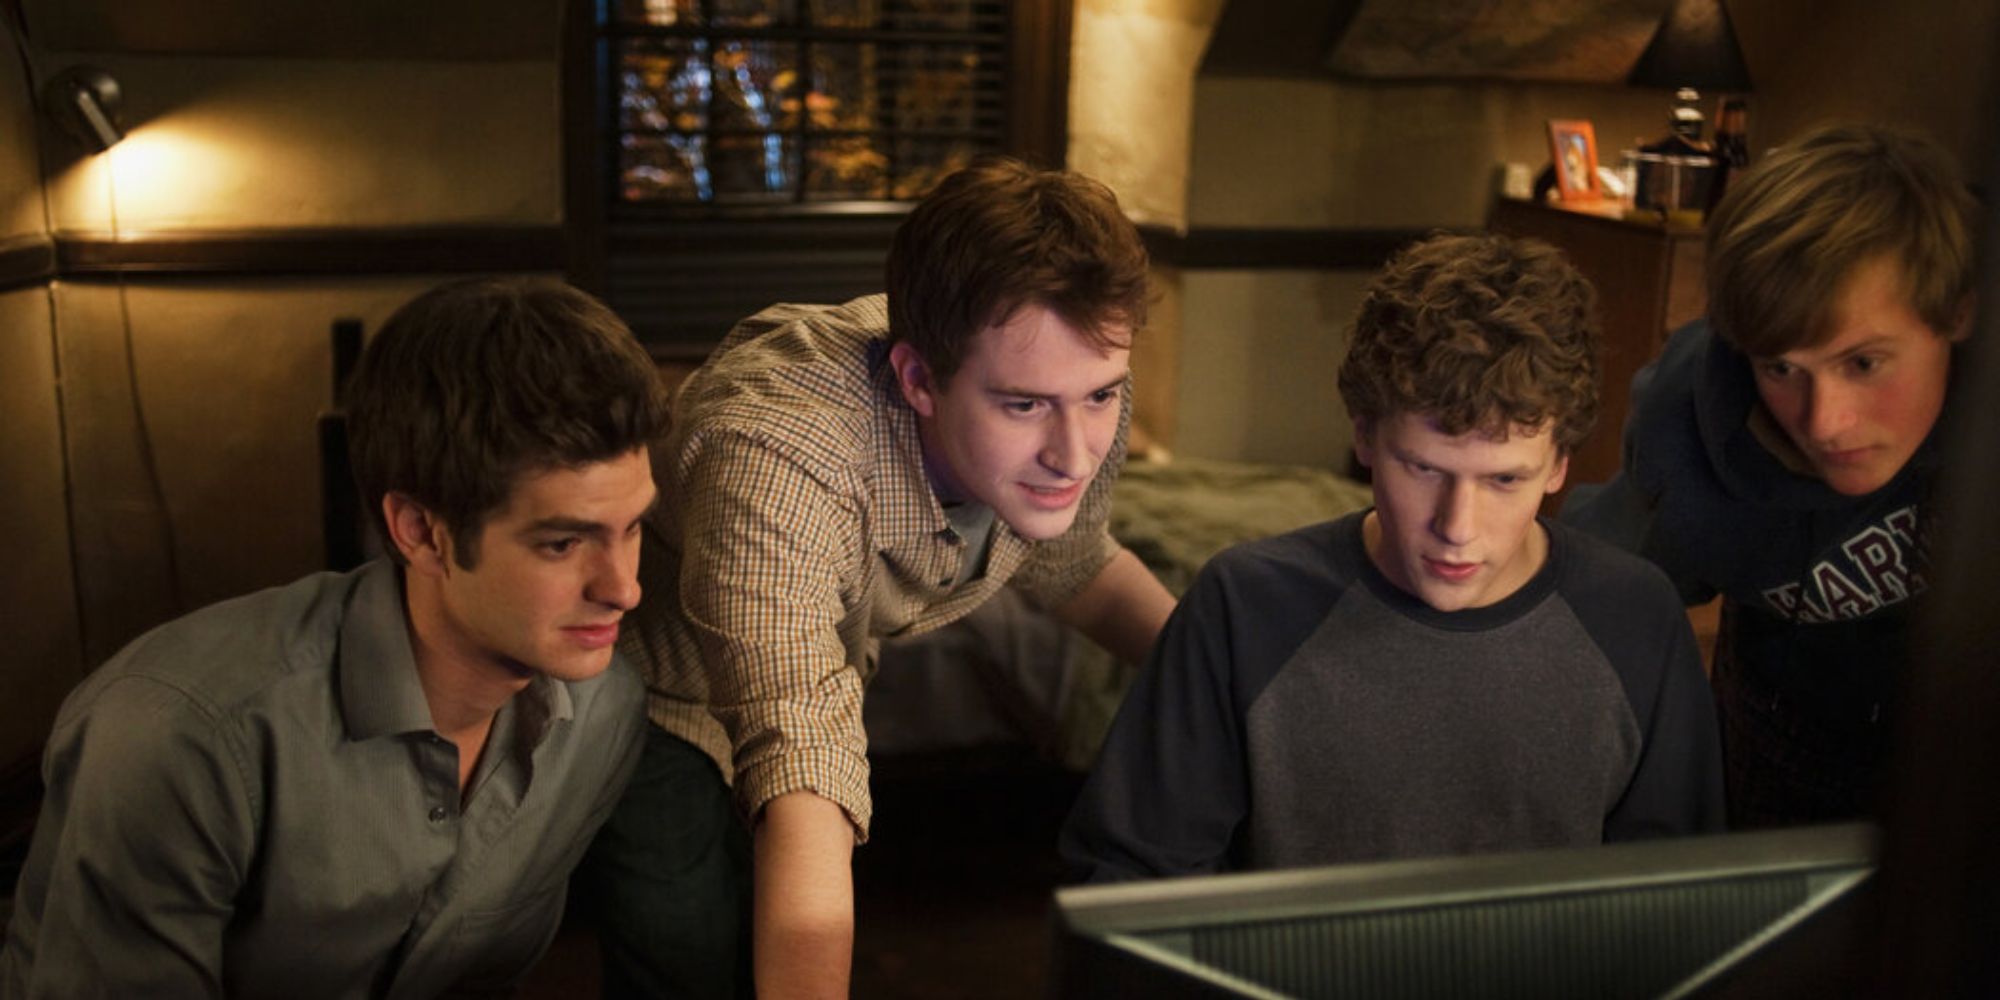 Quatre hommes regardant un écran d'ordinateur dans une chambre d'étudiant.